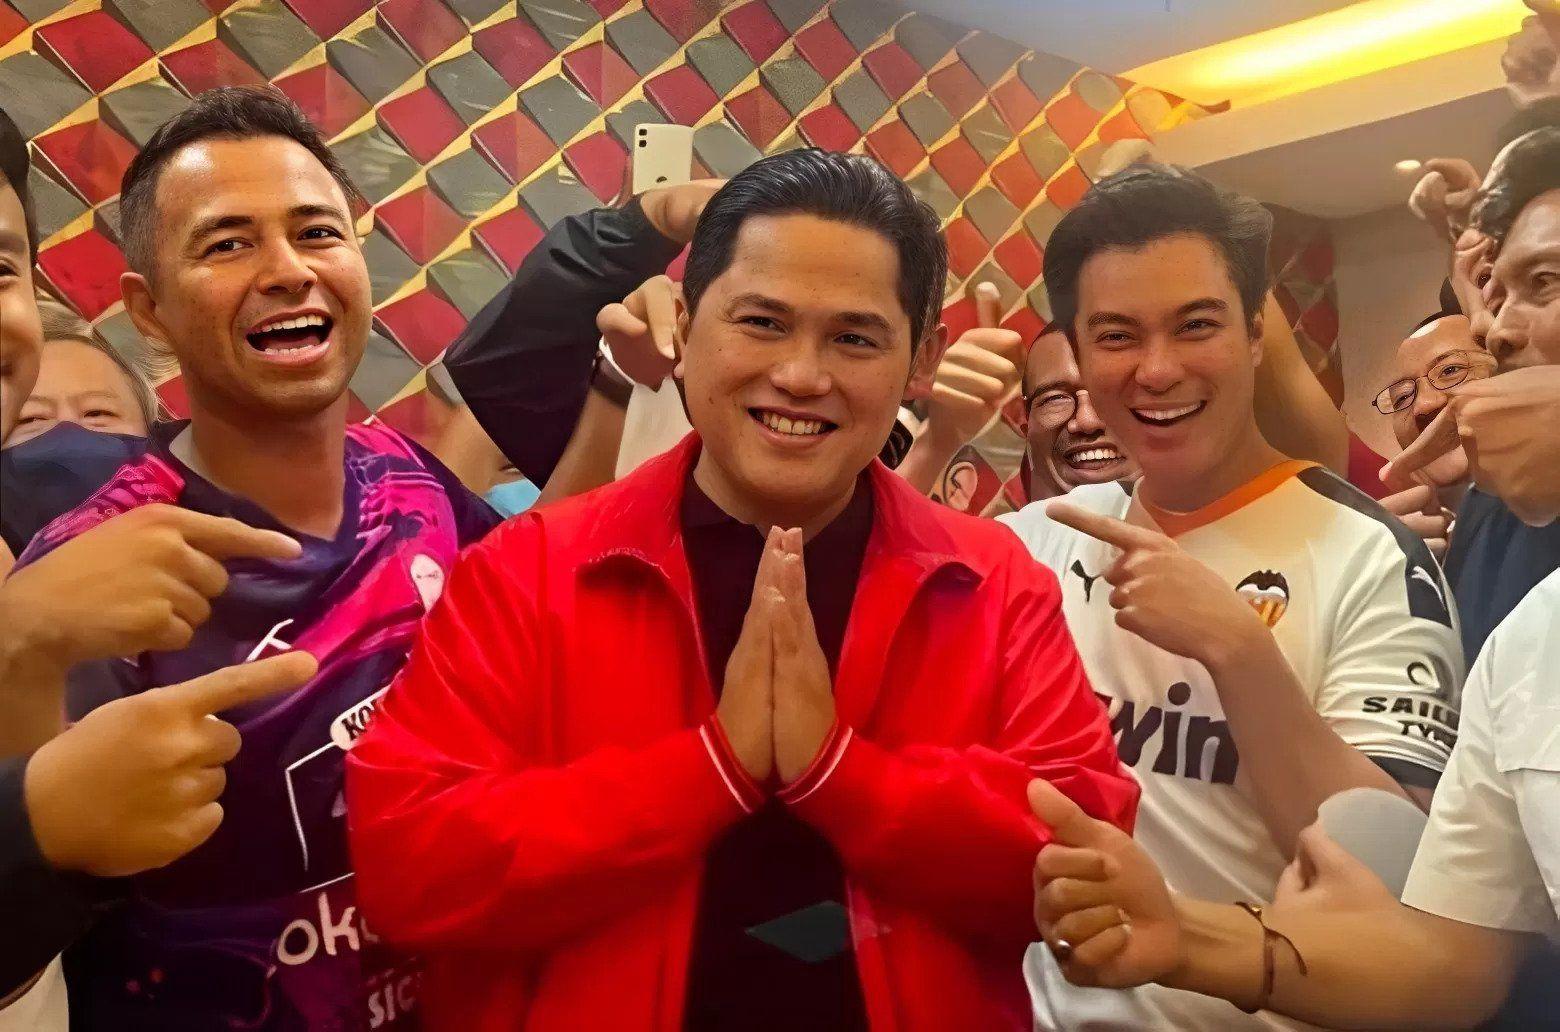 Rekam Jejak Sriwijaya FC Lawan PSMS Medan. Kekuatan Lobby. Hingga Head to Head Pertandingan.